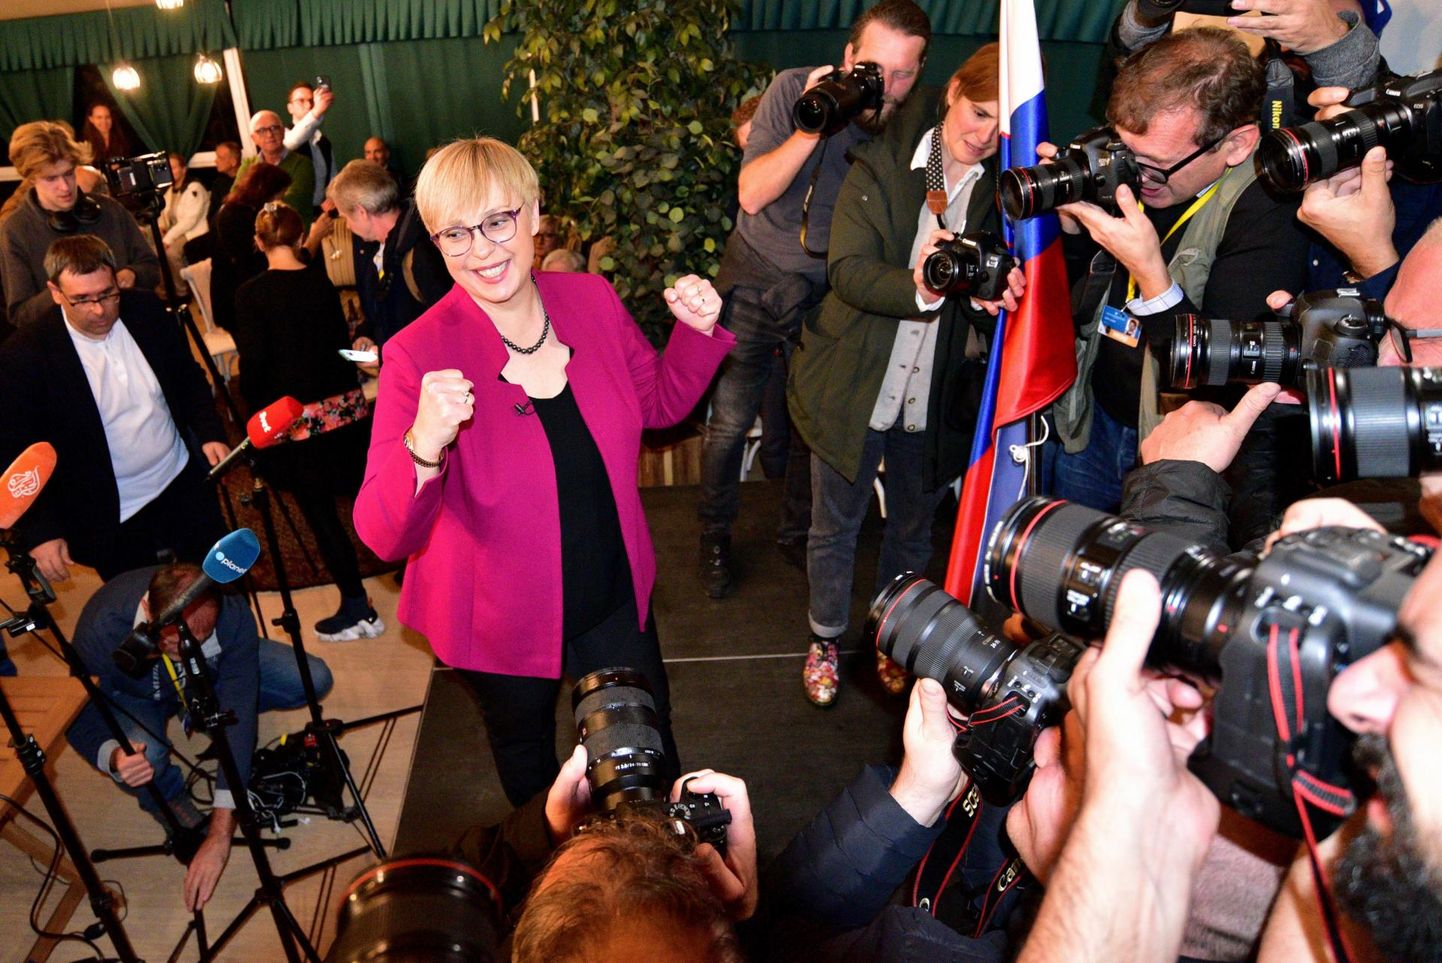 Sõltumatuna kandideerinud Nataša Pirc Musar rõõmustab üleeile õhtul pärast valimistulemuste selgumist Sloveenia järgmiseks presidendiks saamise üle. FOTO: Igor Kupljenik/epa/scanpix